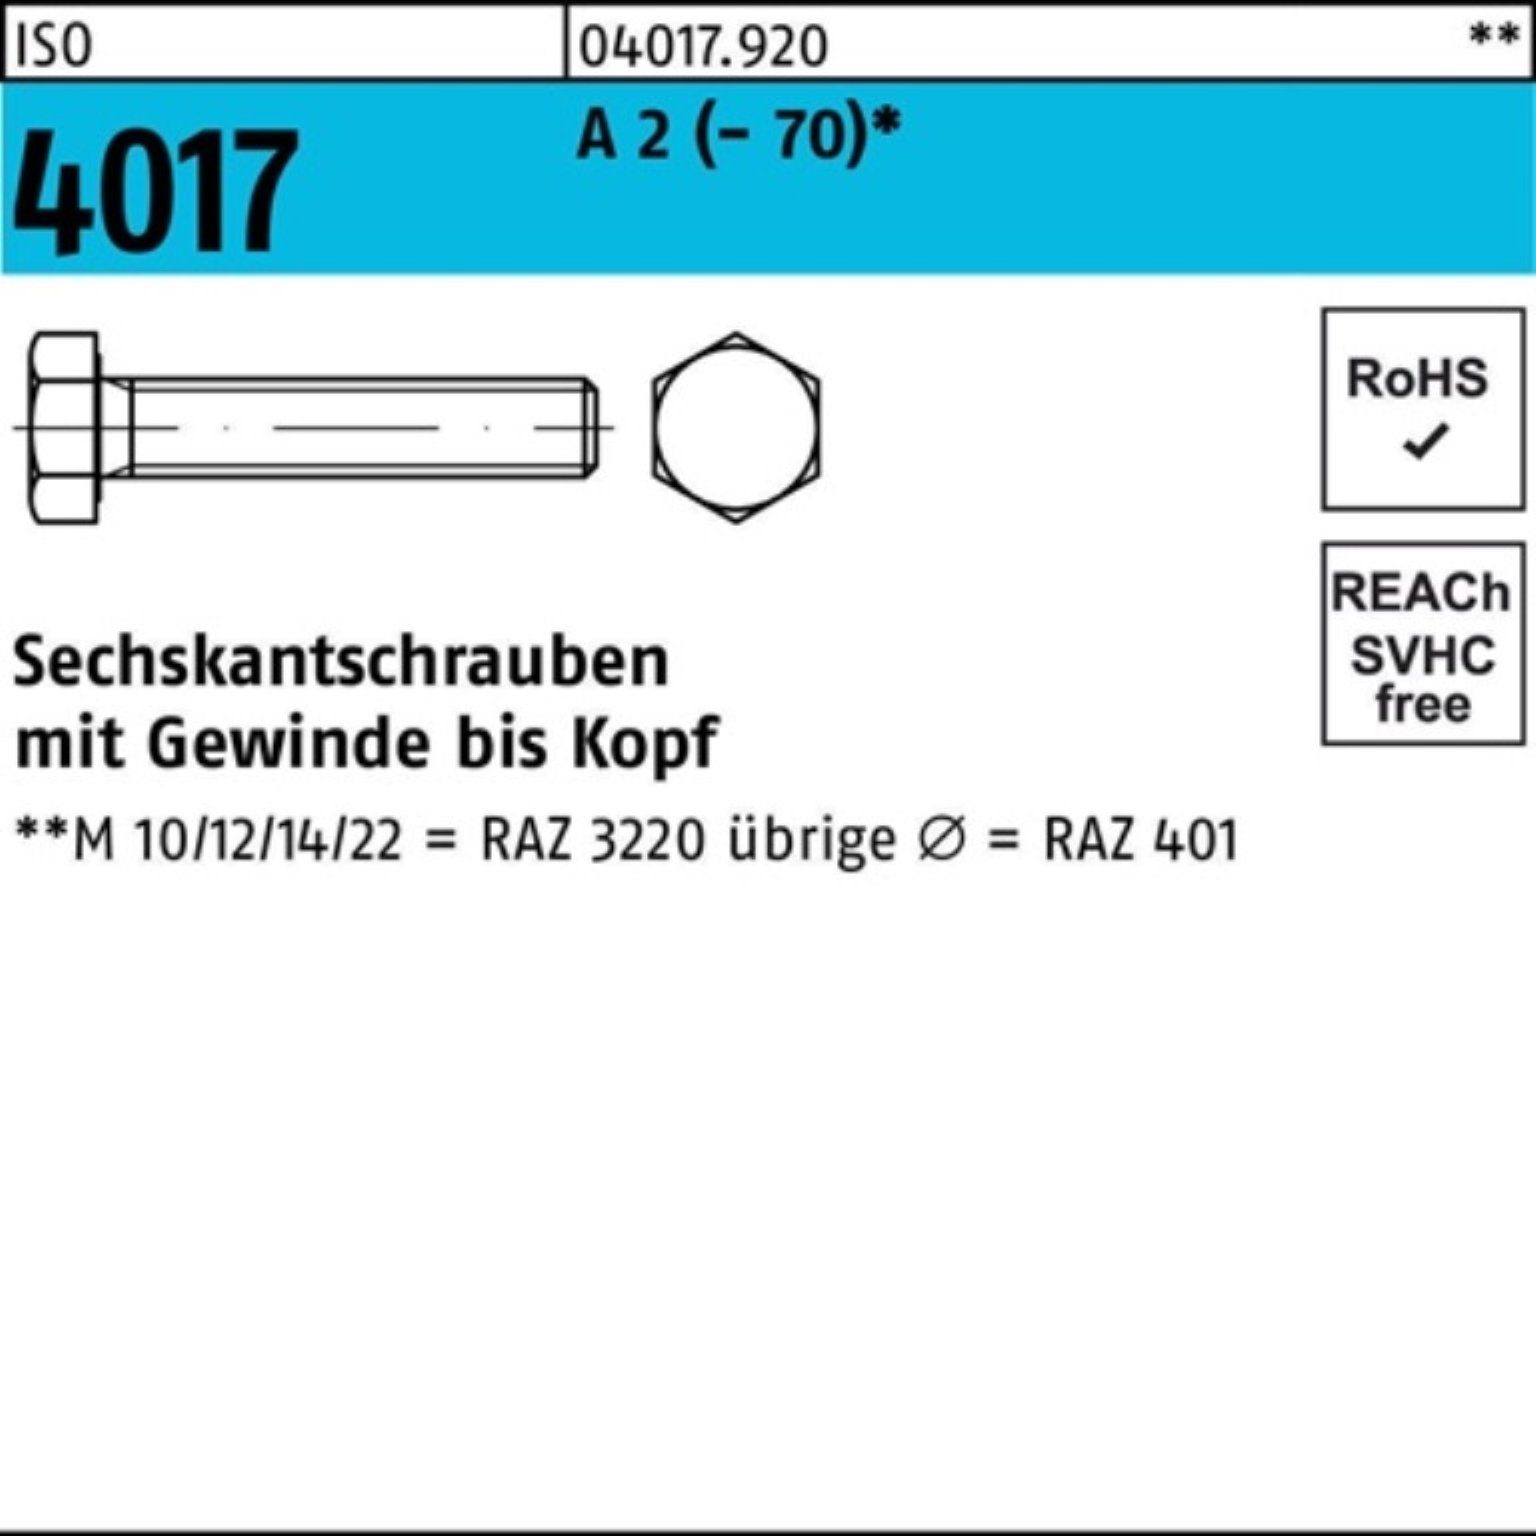 Bufab Sechskantschraube 100er Pack Sechskantschraube ISO 4017 VG M14x 100 A 2 (70) 50 Stück